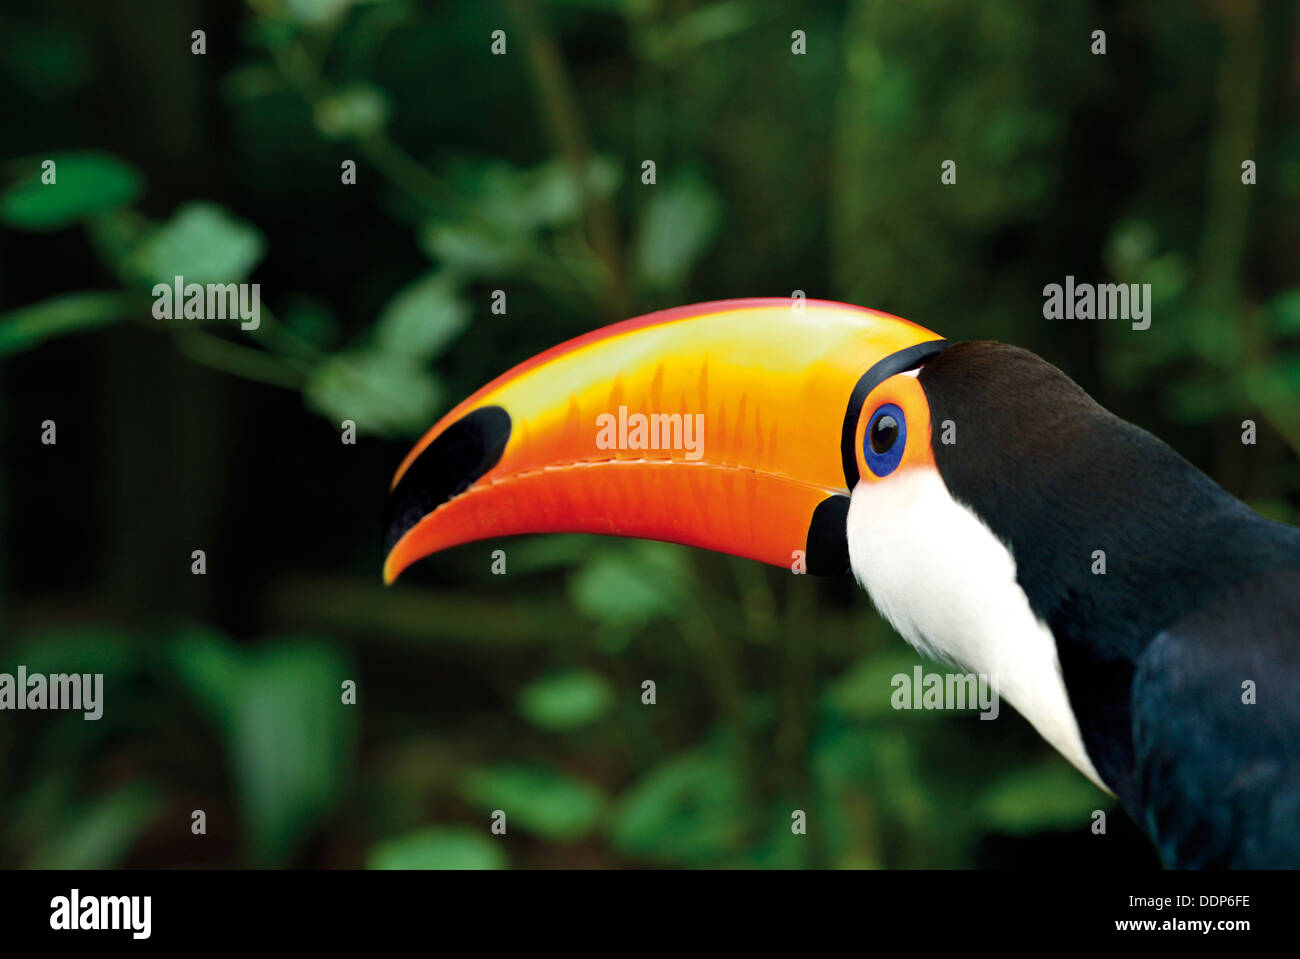 Brésil, Rio de Janeiro : vue latérale d'un toucan (Ramphastos toco), dans le Parc National d'Iguaçu Banque D'Images